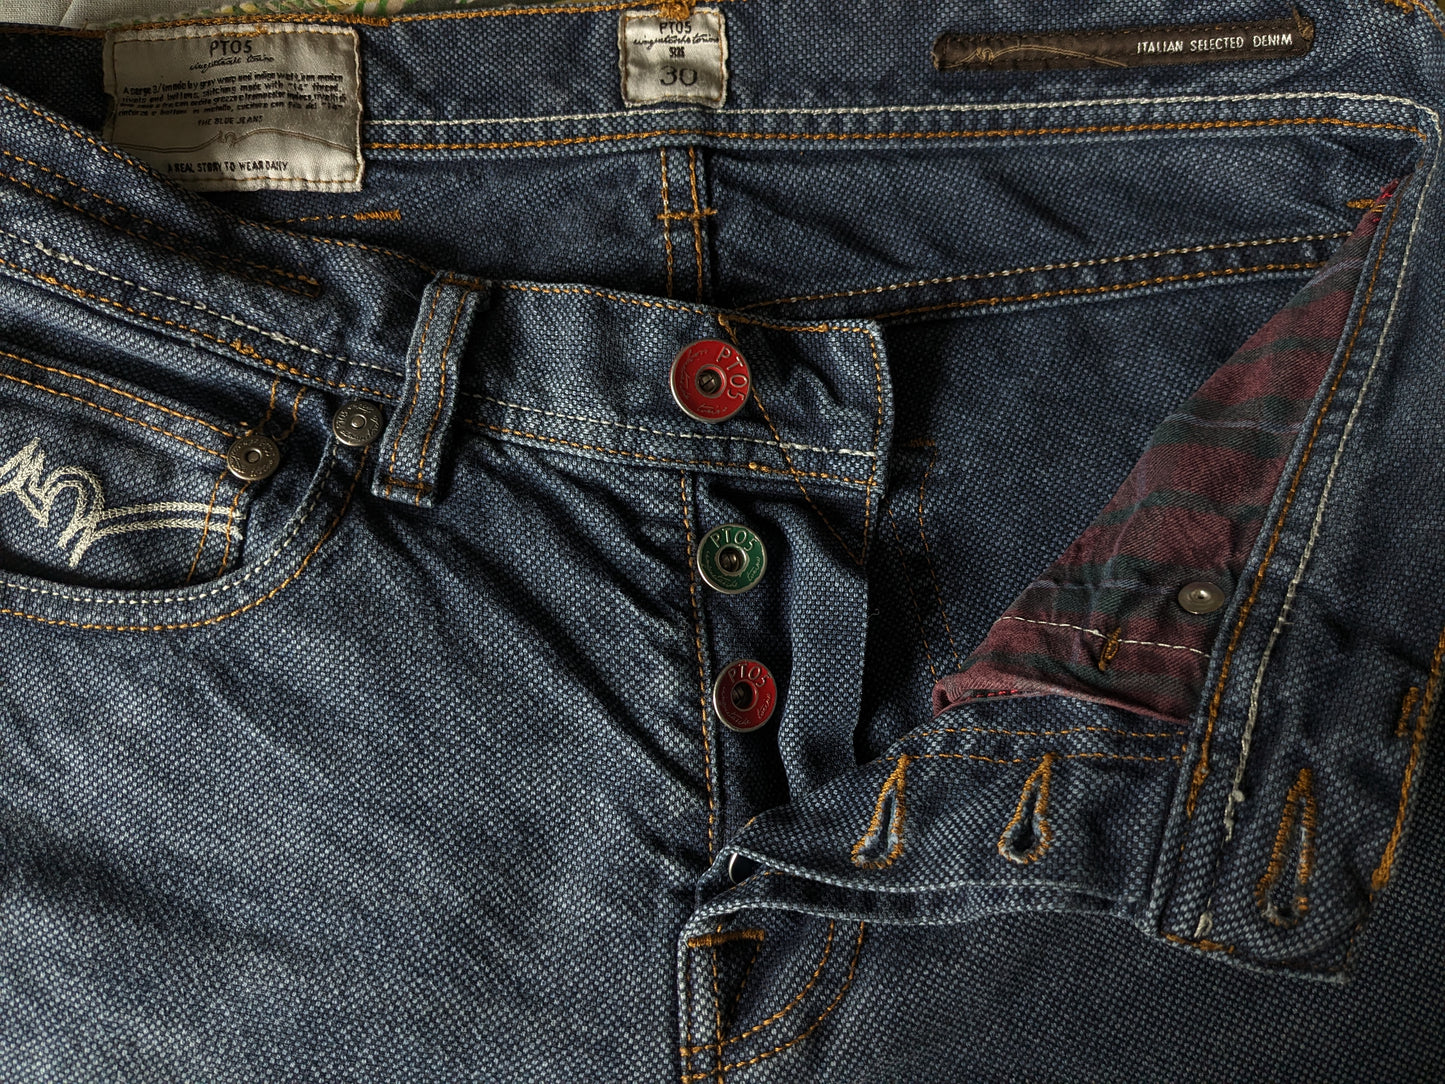 PT05 Jeans. Blau gemischt. Größe W30 - L36.